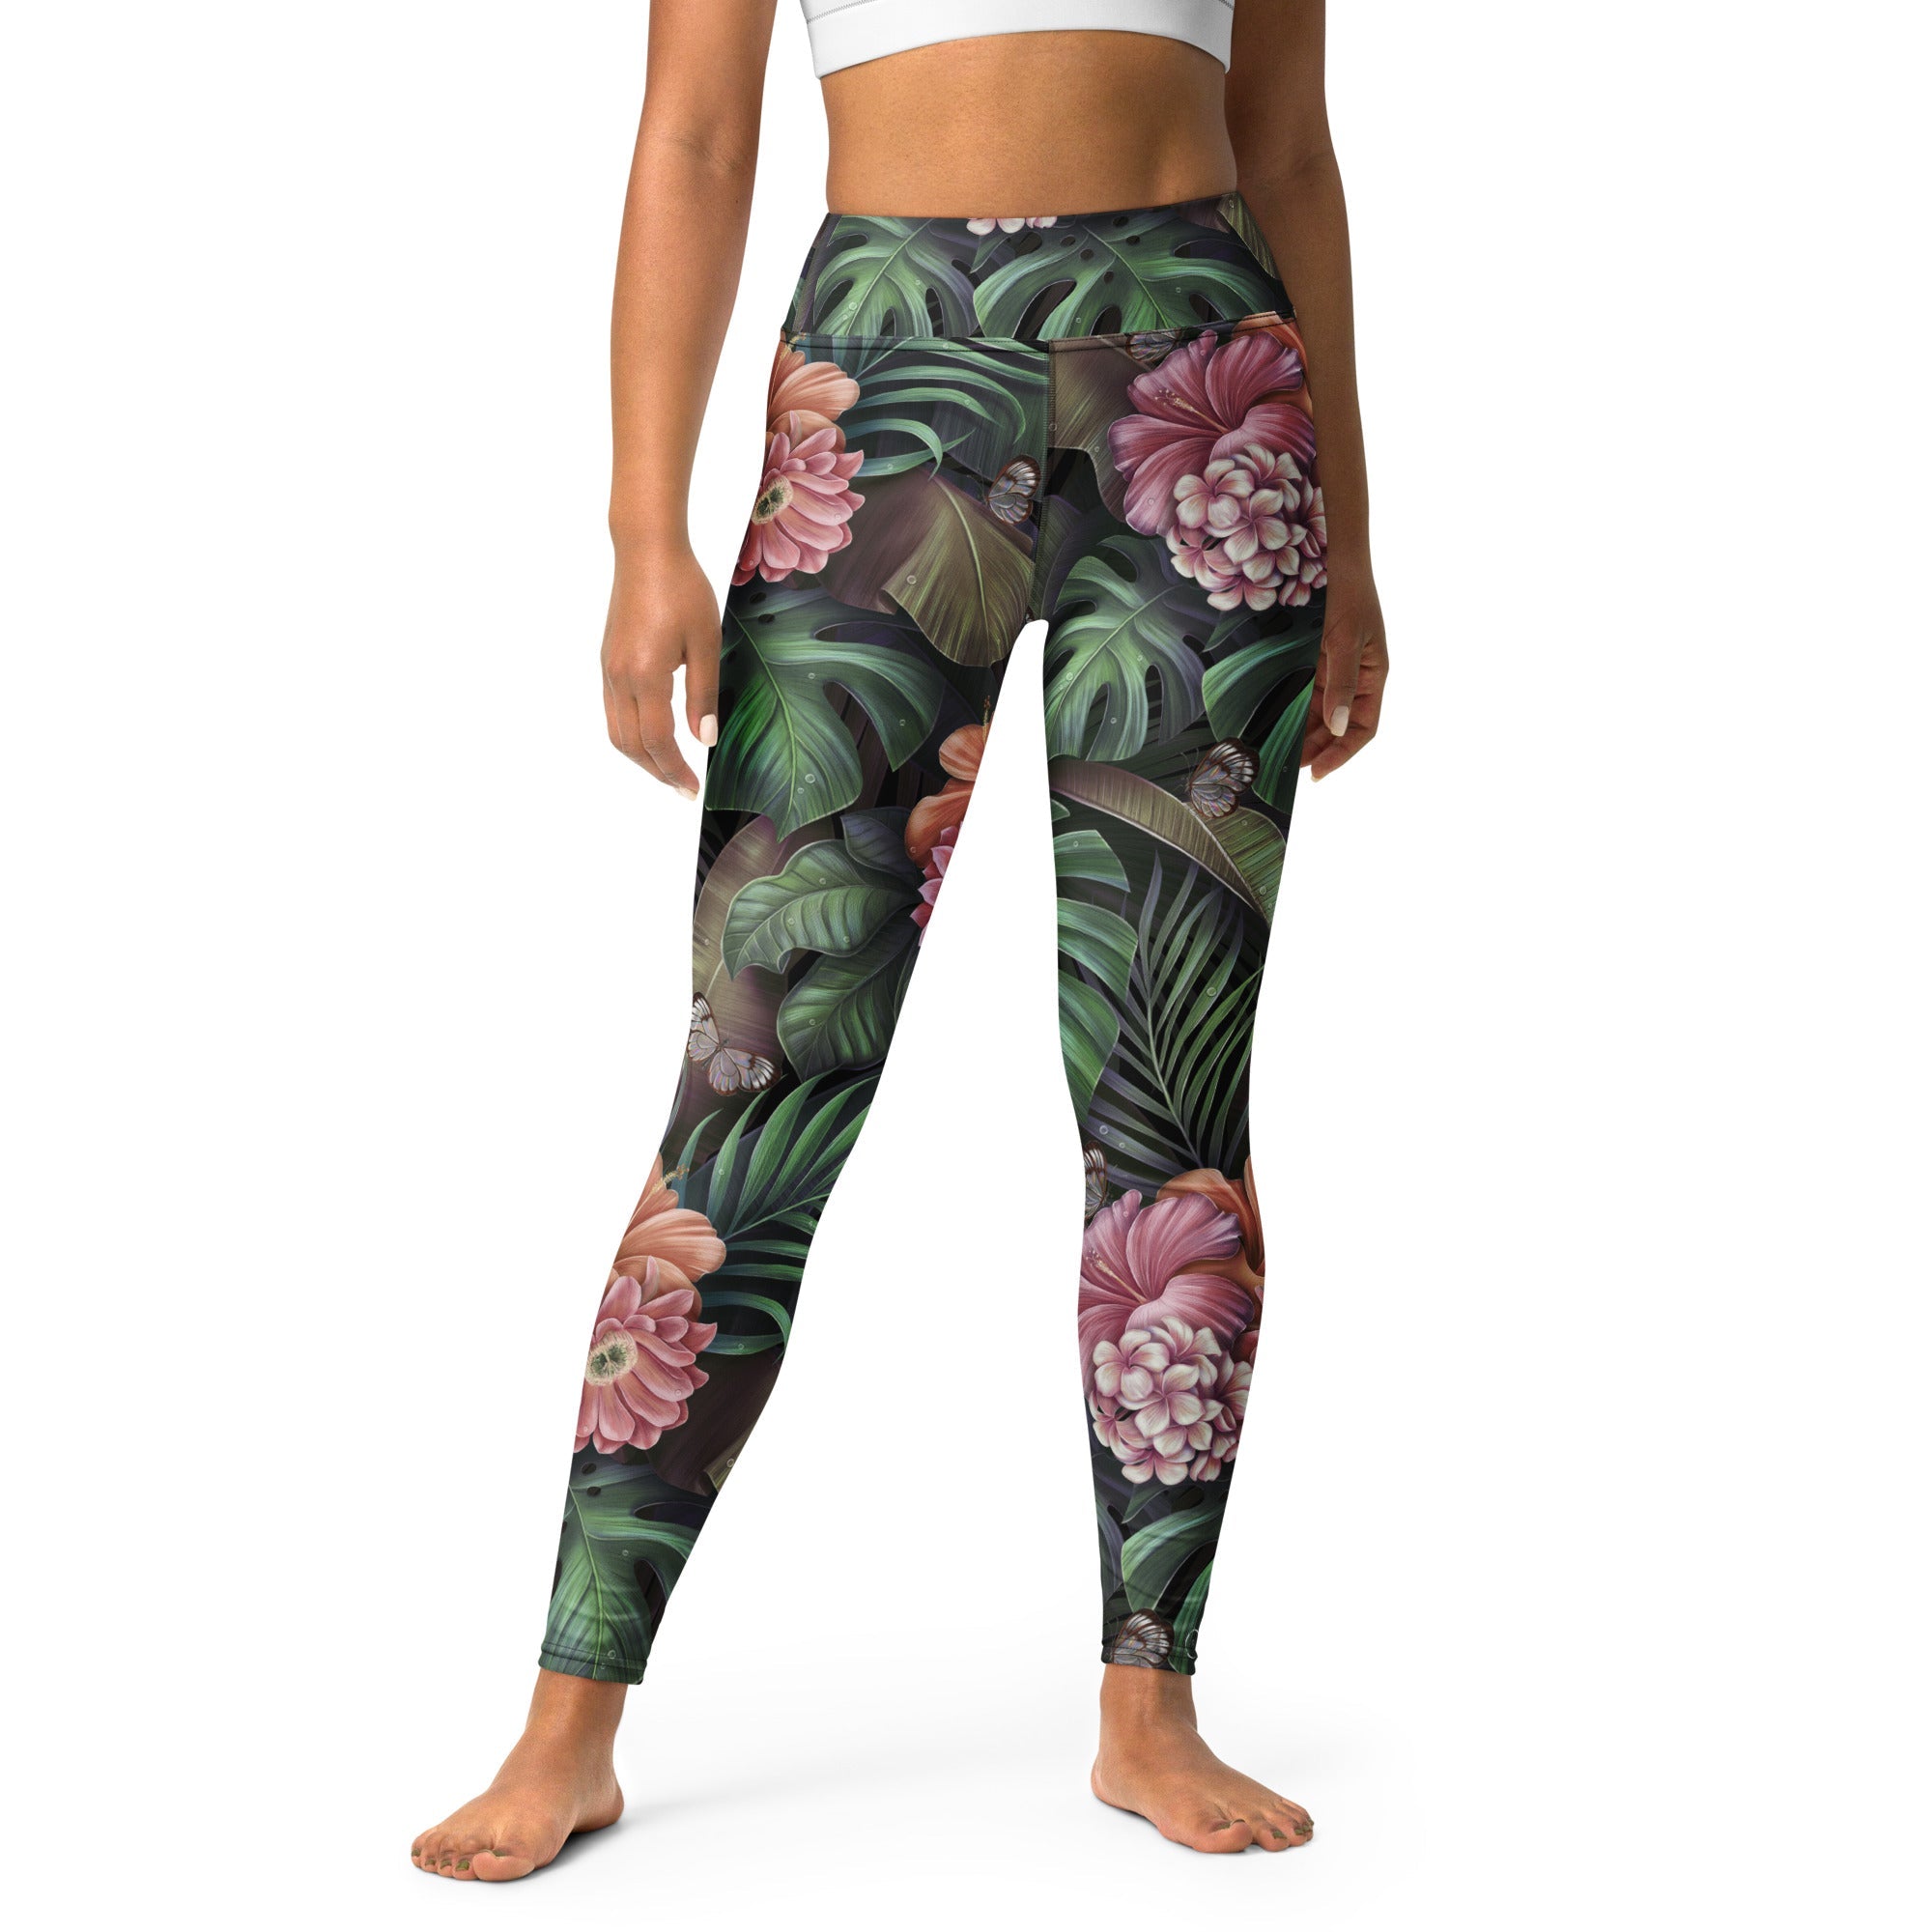 beyond yoga floral leggings